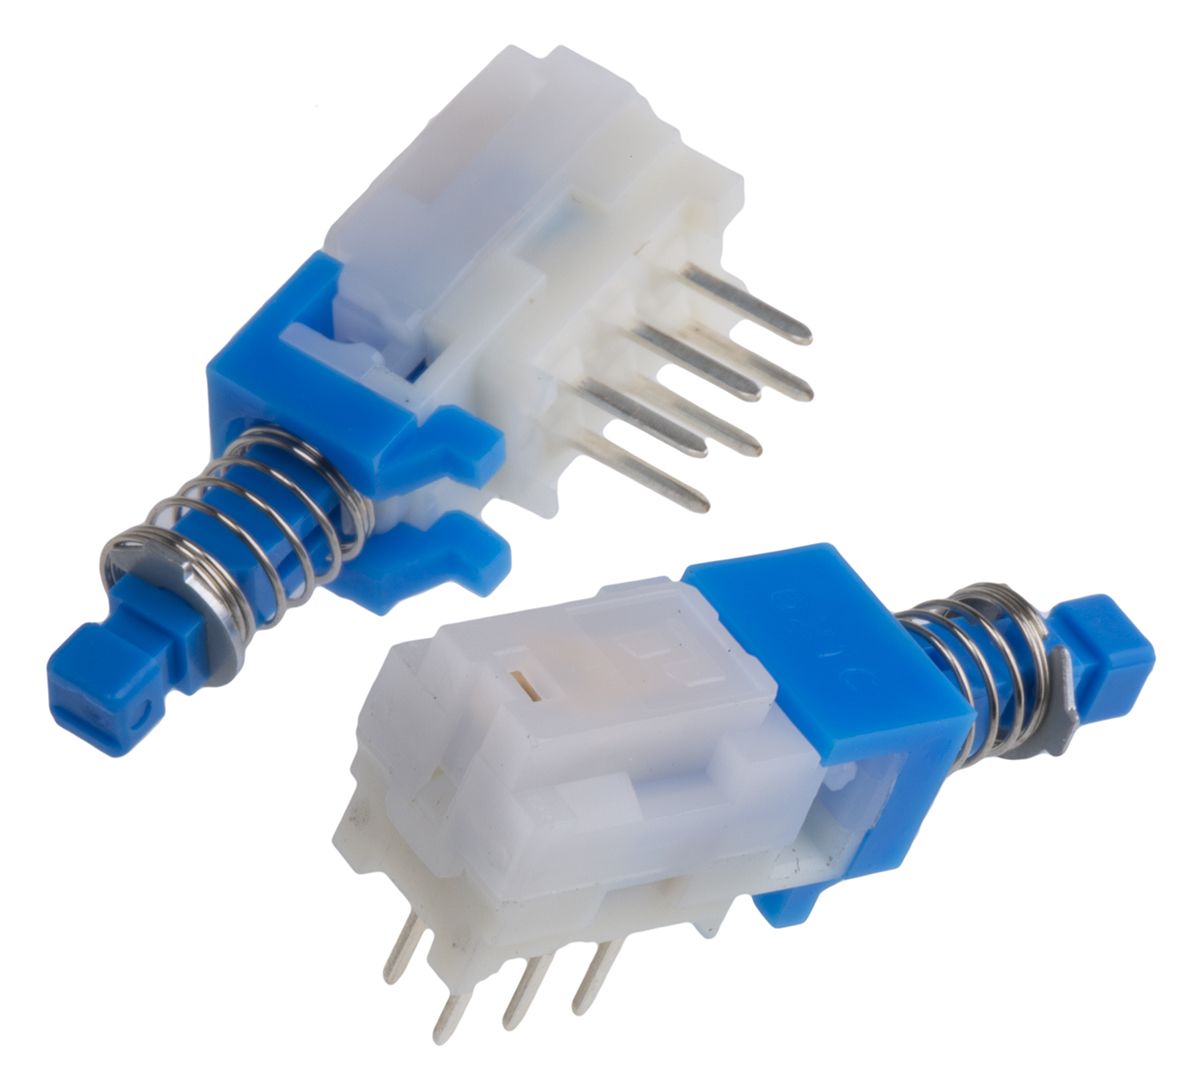 Interruptor de Botón Pulsador Azul, Double Pole Double Throw (DPDT), PCB, Enclavamiento, No, 100 mA @ 30 V dc